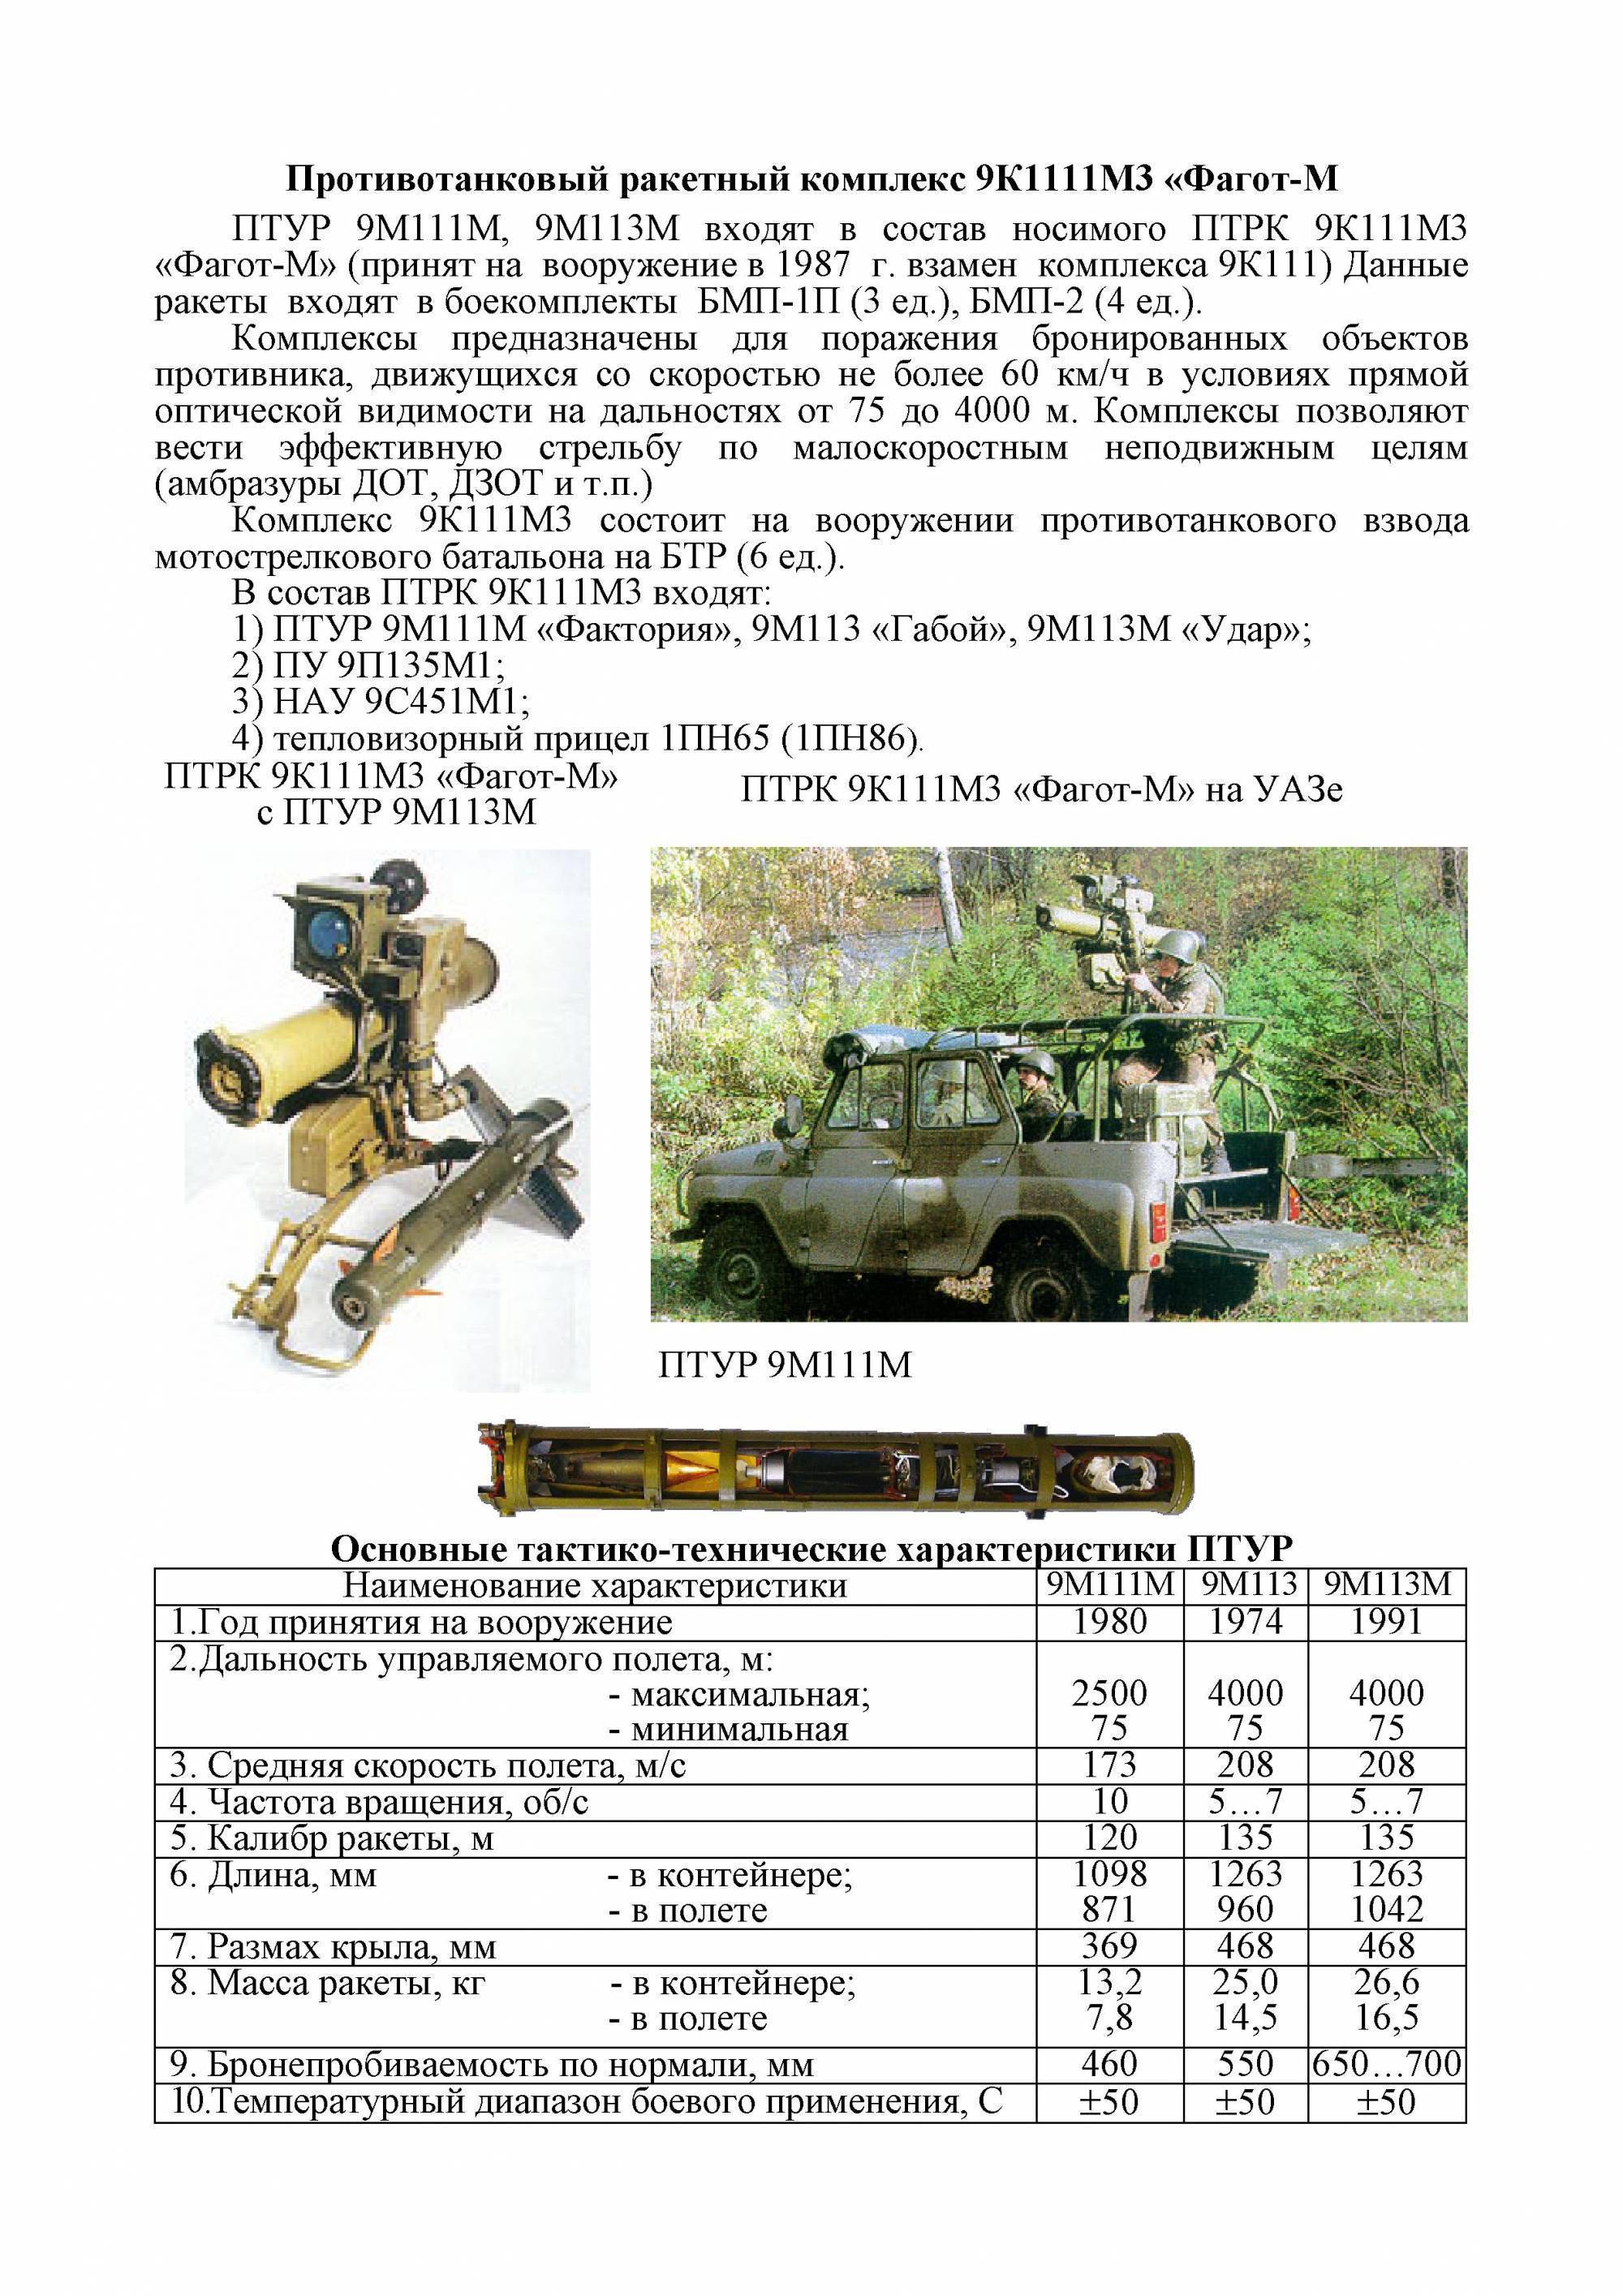 Птрк конкурс: противотанковый ракетный комплекс, ракета 9к113, 9п148 боевая машина, характеристики (ттх)